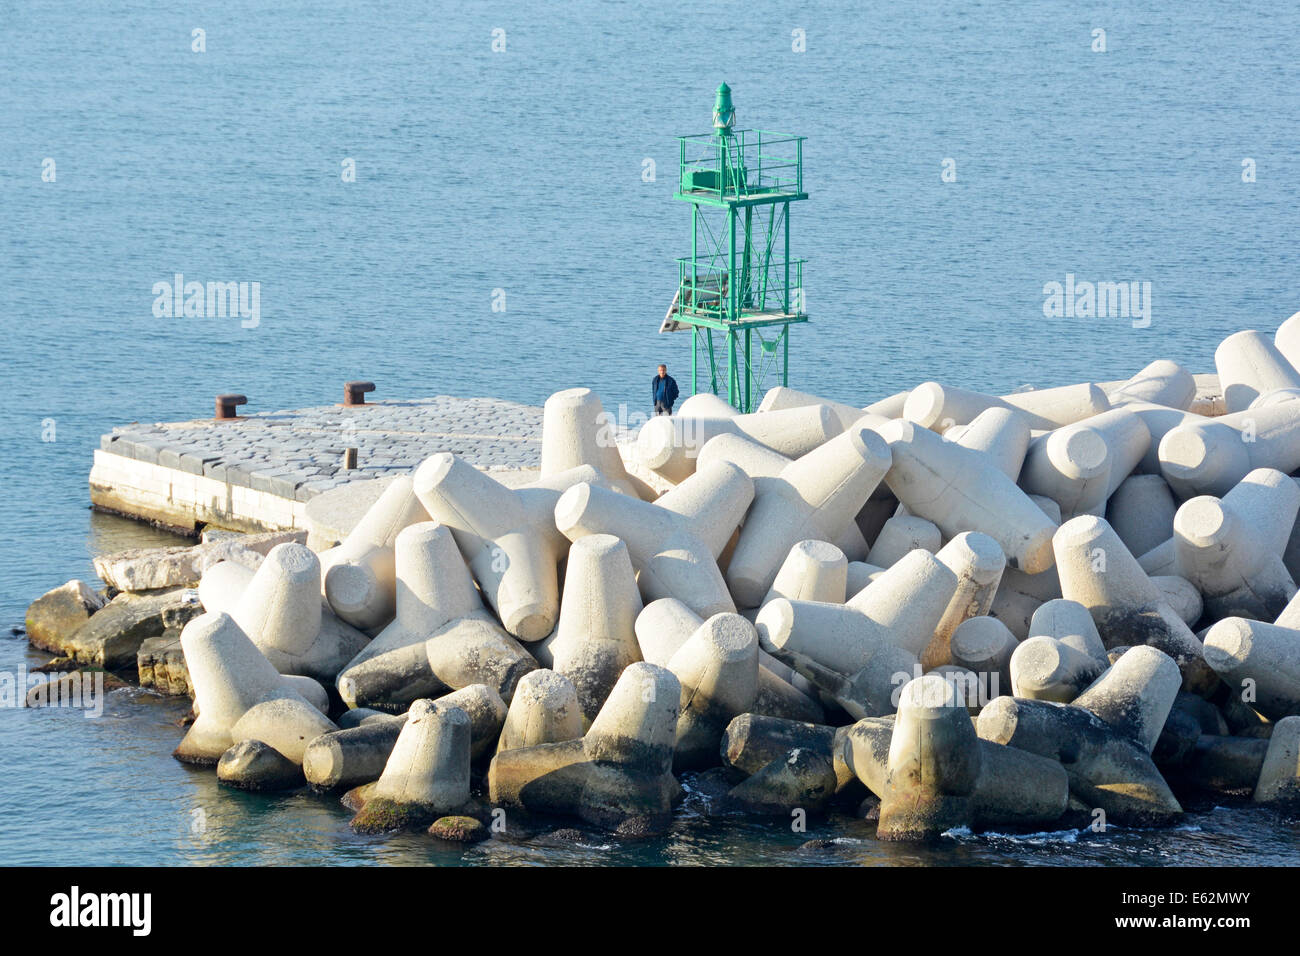 Homme debout à côté de blocs de béton préfabriqué de type Dolosse dans brise-lames protéger le marqueur de canal vert sur le mur du port Bari Port Puglia Italie Adriatique Banque D'Images